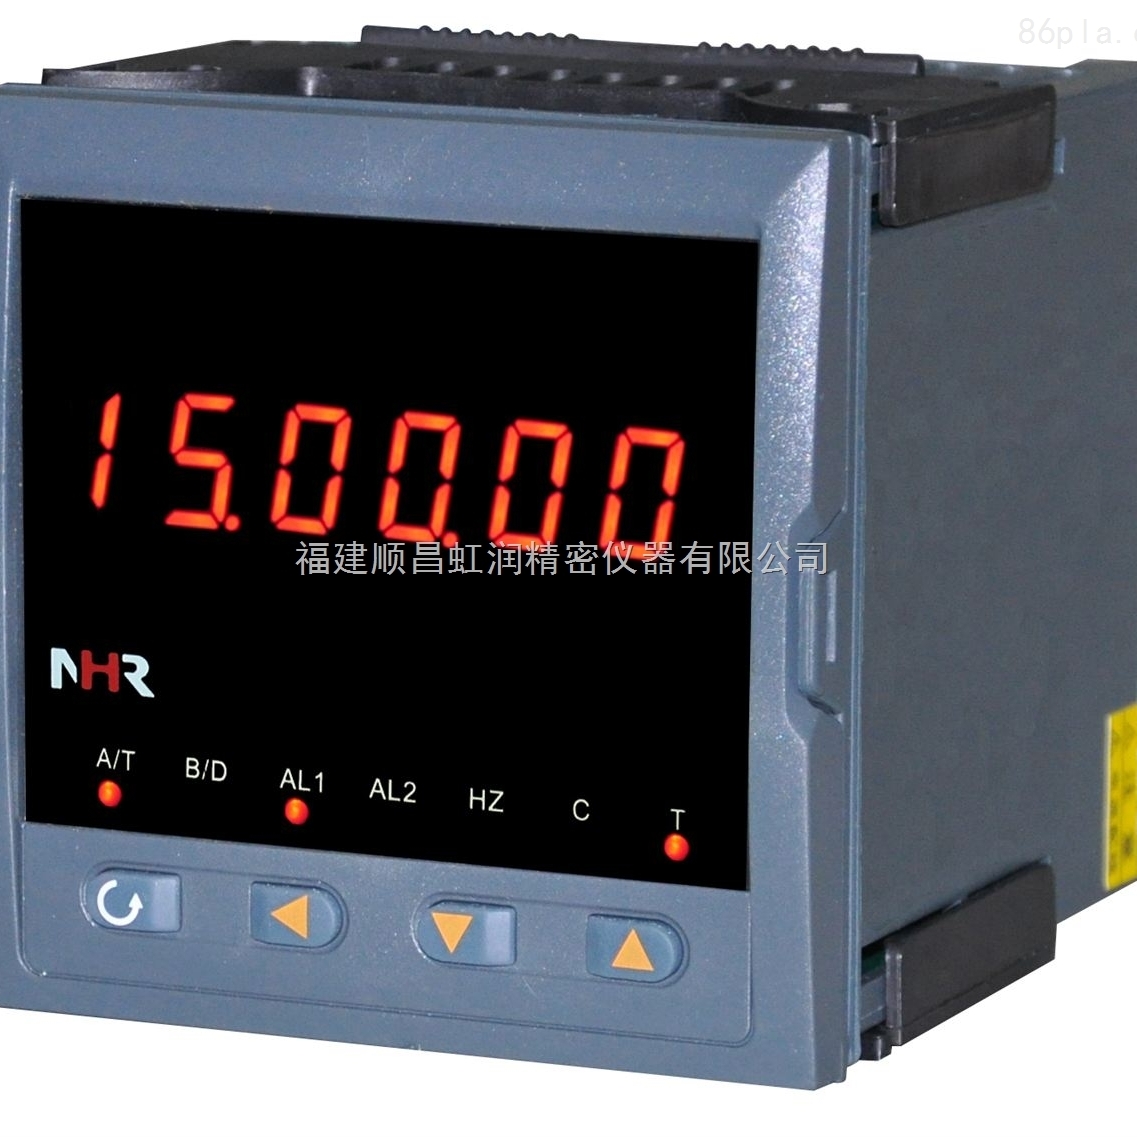 虹润NHR-XTRT系列温度远传监测仪